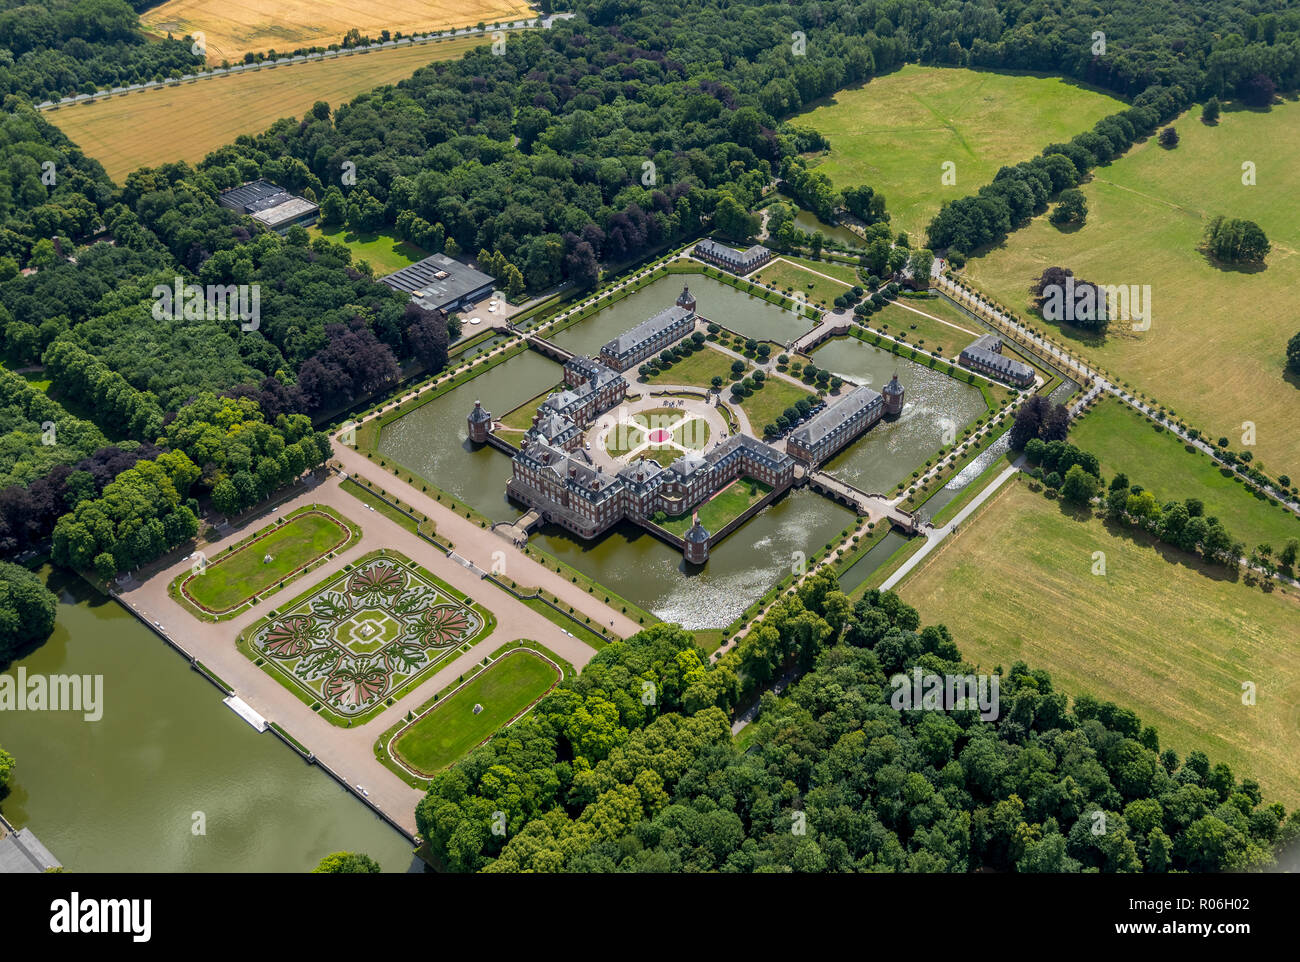 Vue aérienne, château d'eau, moaded château, Château baroque du Münsterland Nordkirchen, jardin baroque, églises, de l'Allemagne du nord, au nord de la Ruhr Rh Banque D'Images